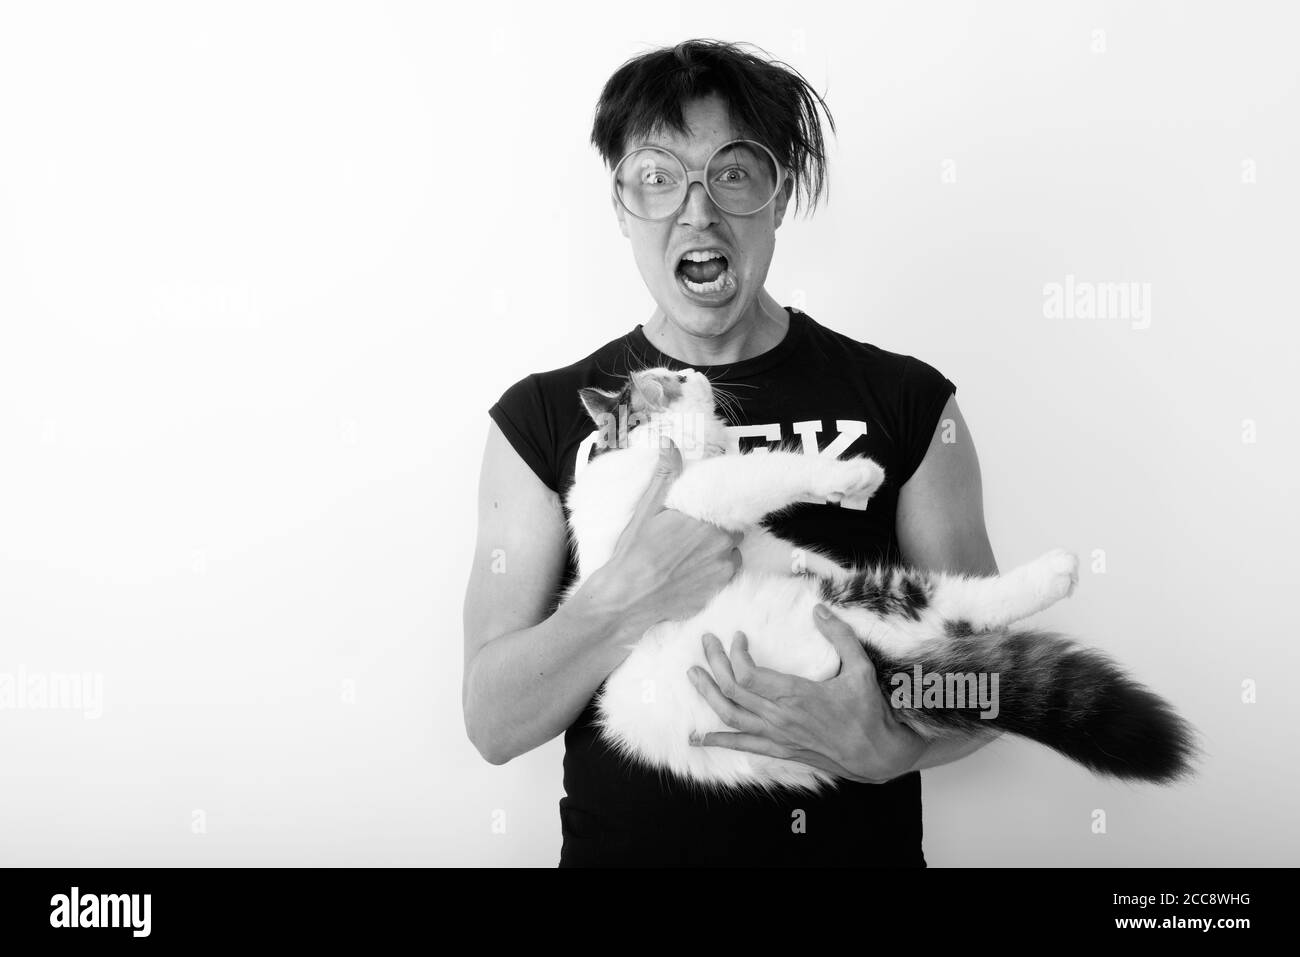 Studioaufnahme eines jungen Nerd-Mannes, der beim Halten aufgeregt aussieht Nette Katze und Brillen tragen Stockfoto